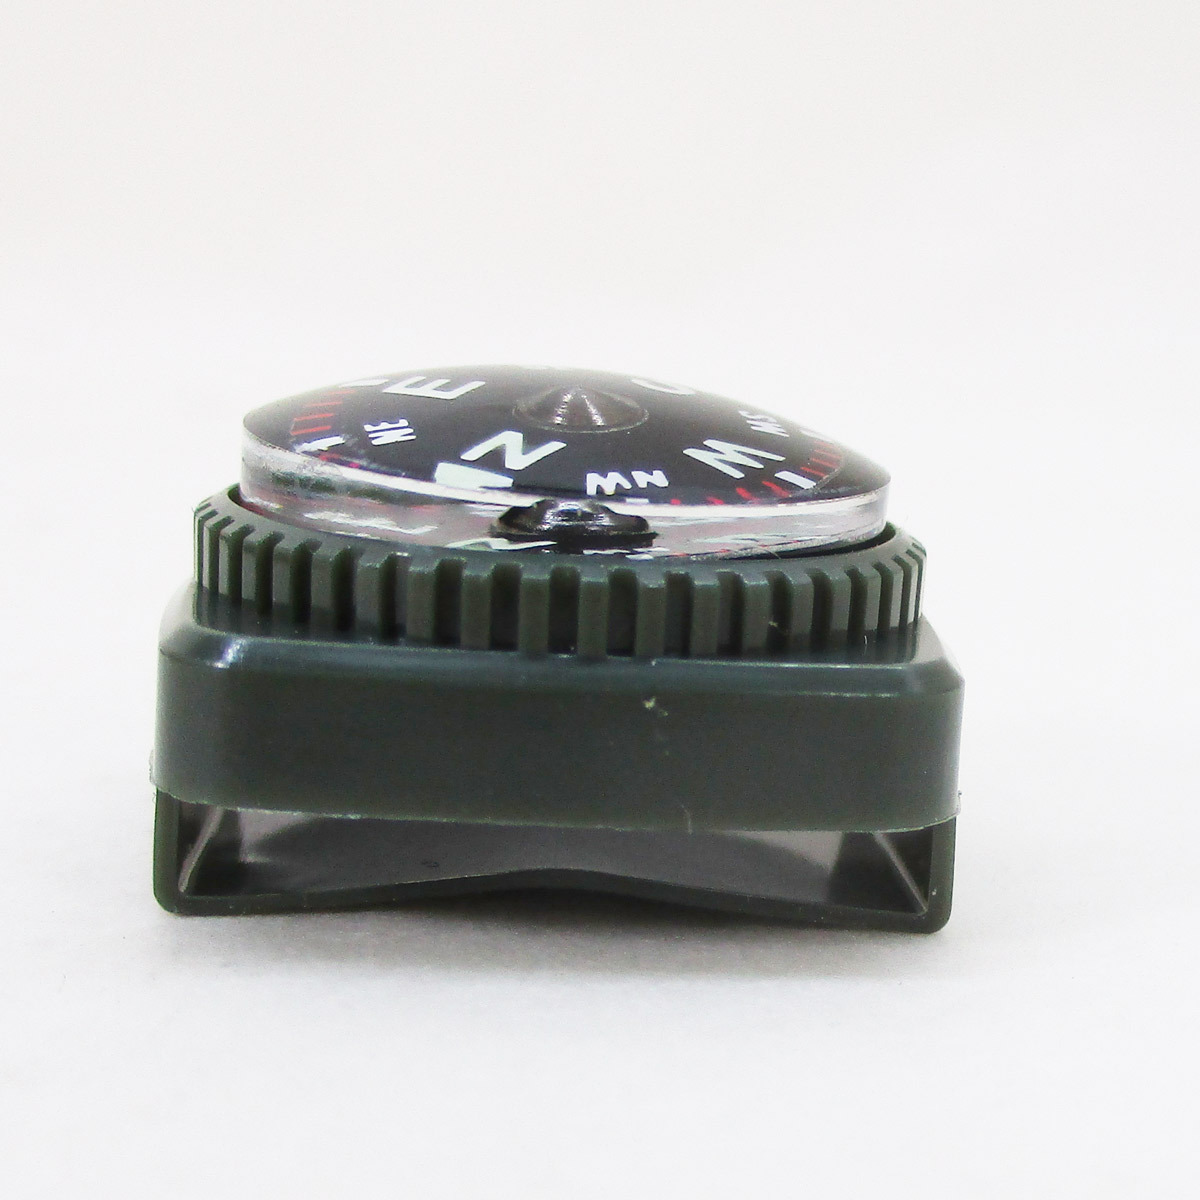 送料無料 方位磁石 リストコンパス ダイバーリストコンパス 100m防水 ベルト通しタイプ N夜光使用 日本製 カラー オリーブ_画像4